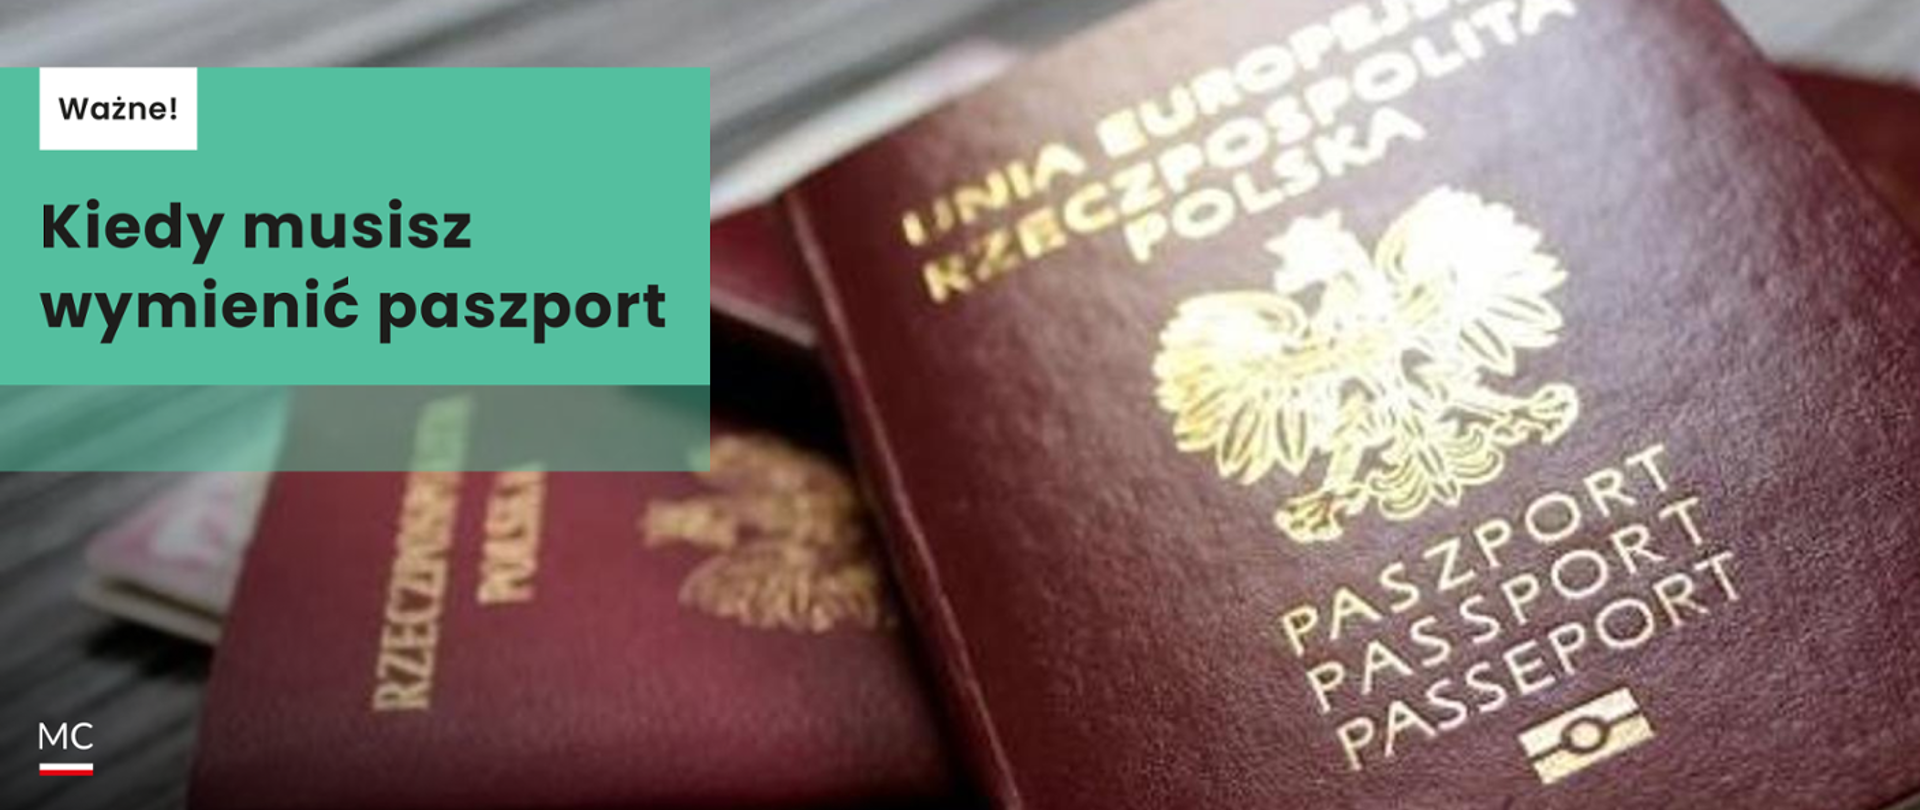 Wymiana paszportu - Kiedy musisz wymienić paszport